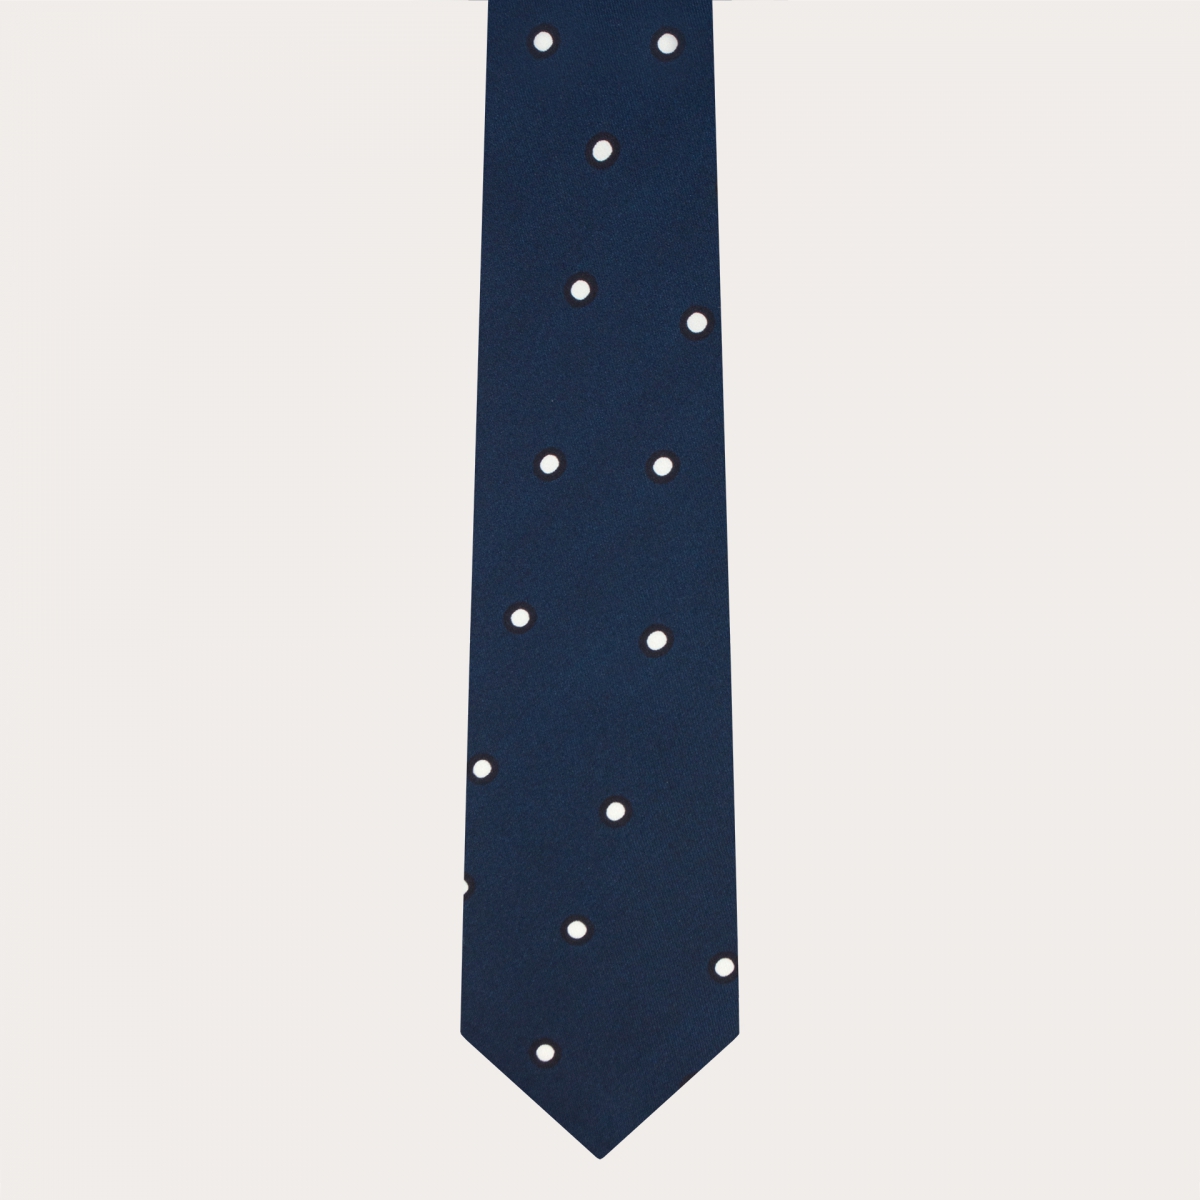 Cravate en soie pour homme, bleue à pois blancs